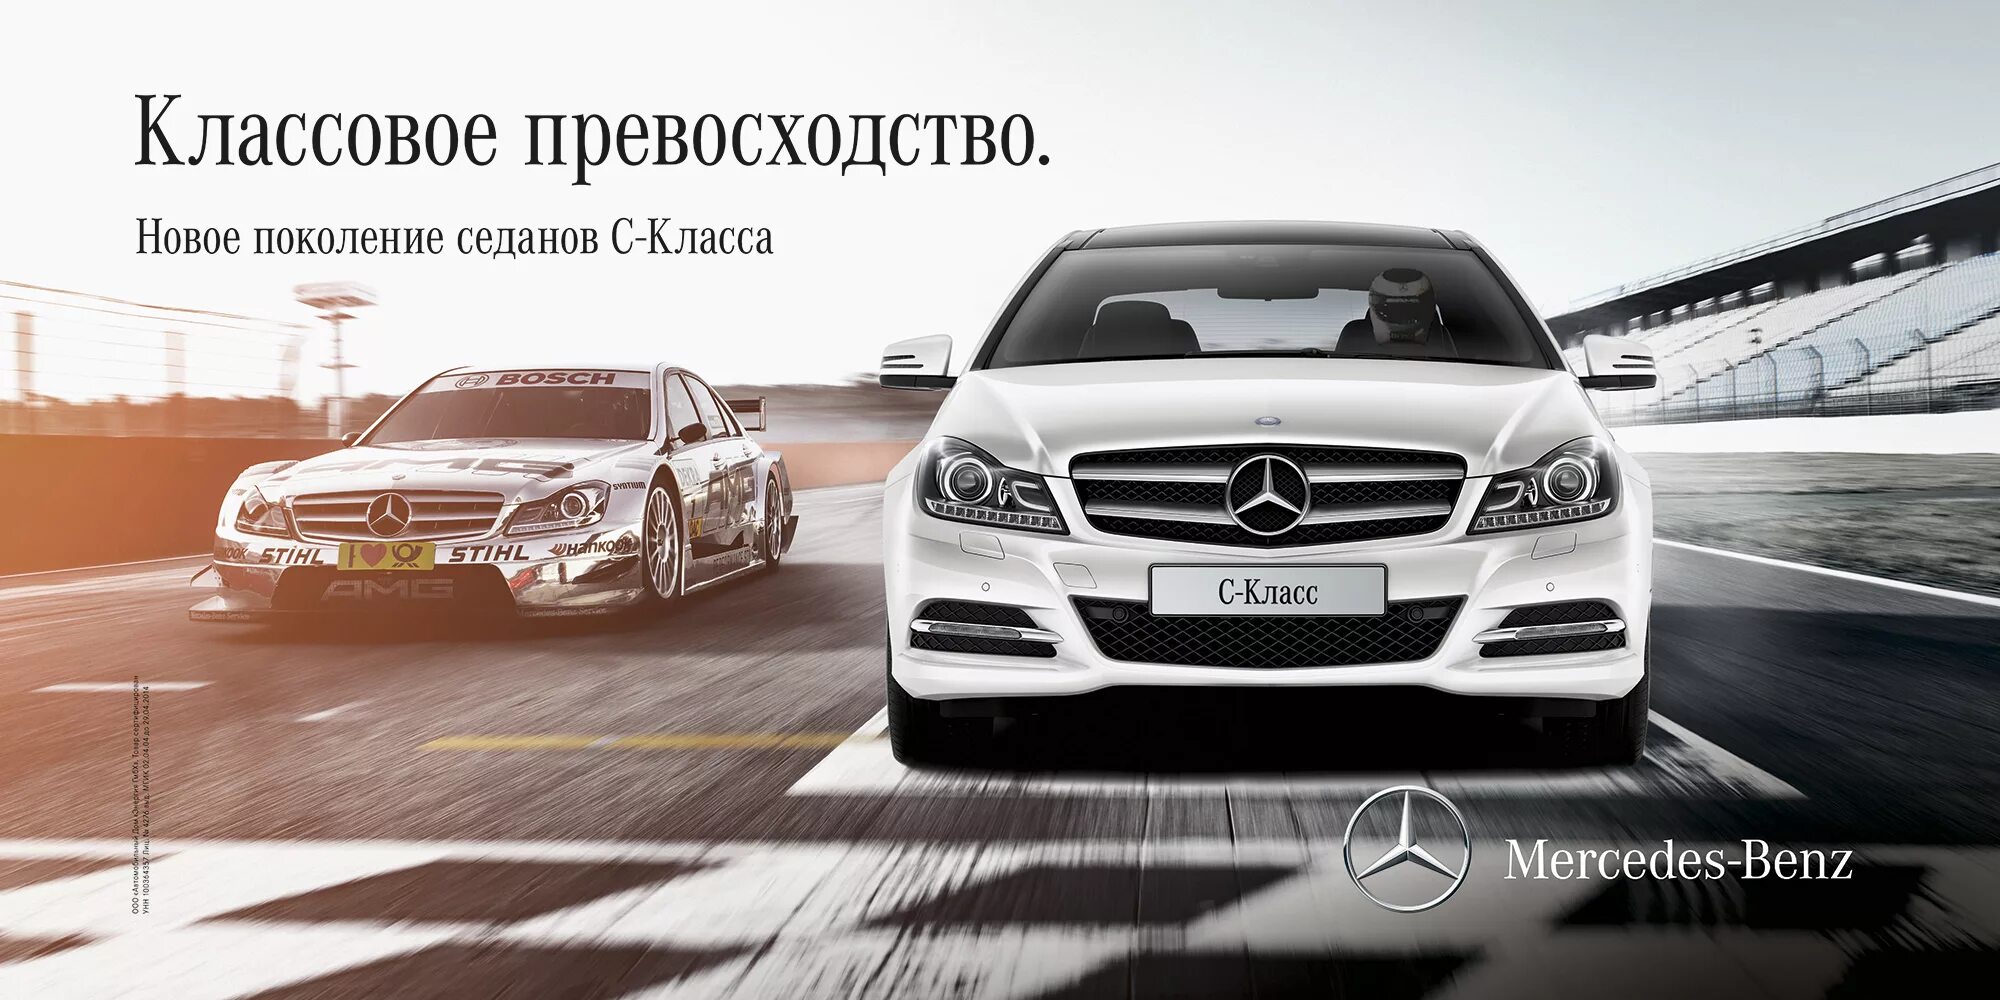 Реклама Мерседес. Реклама автомобиля Мерседес. Реклама Mercedes Benz. Баннер Мерседес. Реклама mercedes